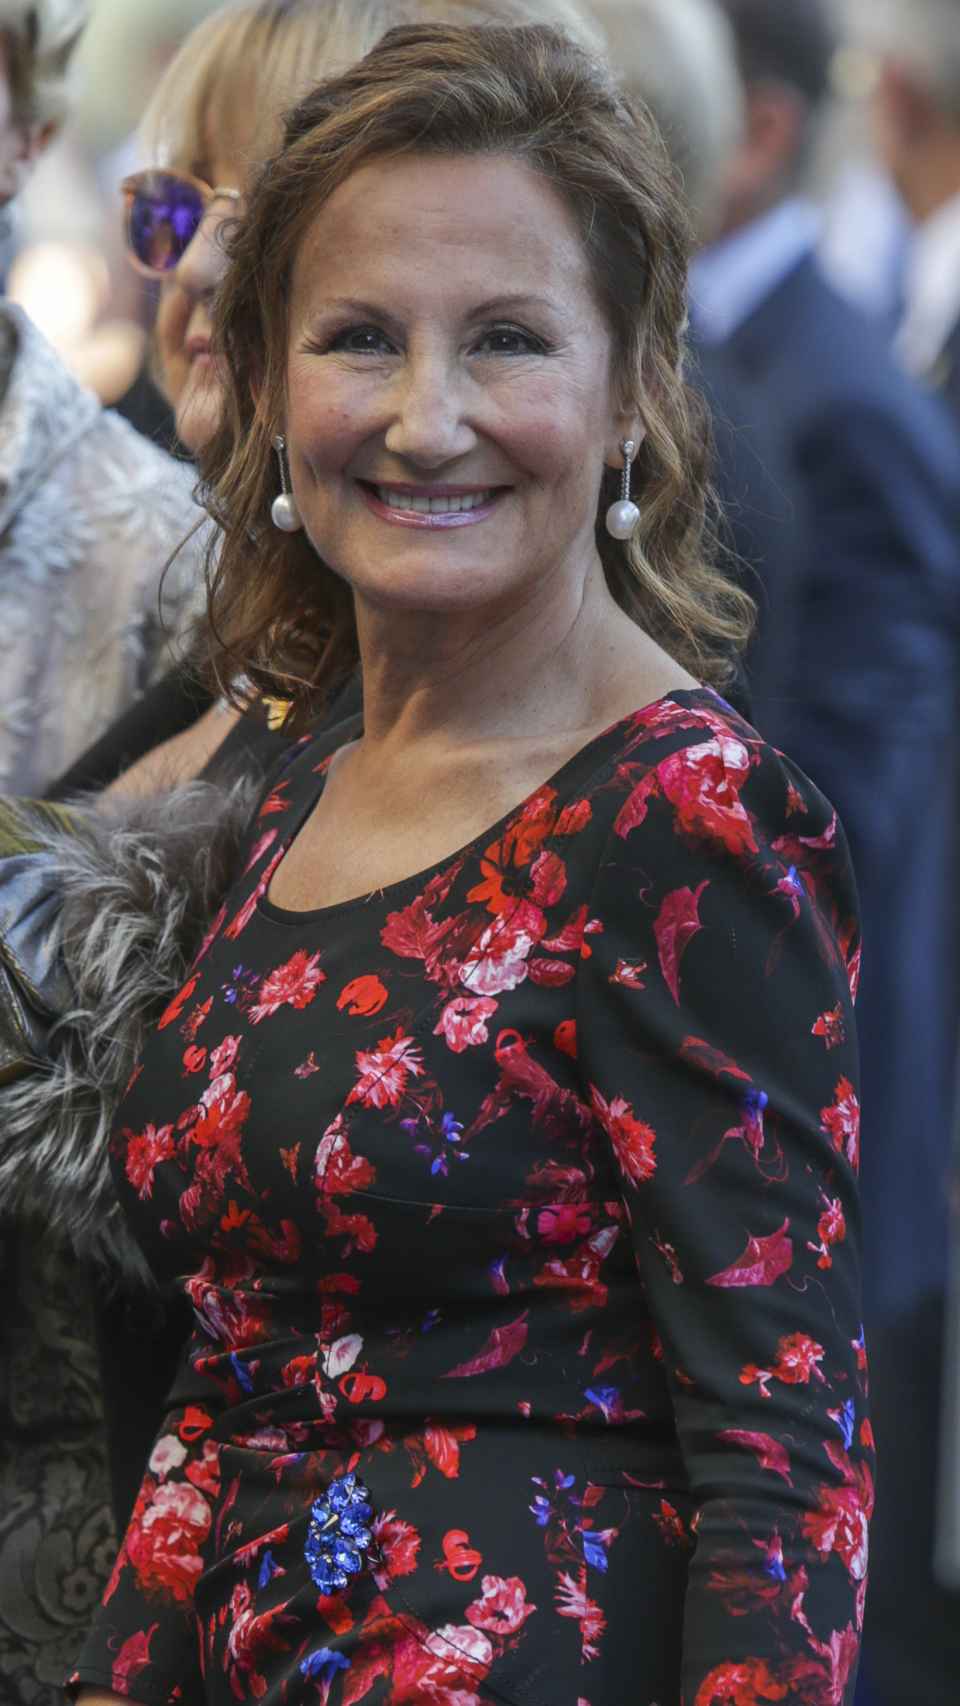 Paloma Rocasolano en una imagen tomada en los Premios Princesa de Asturias, en 2017.